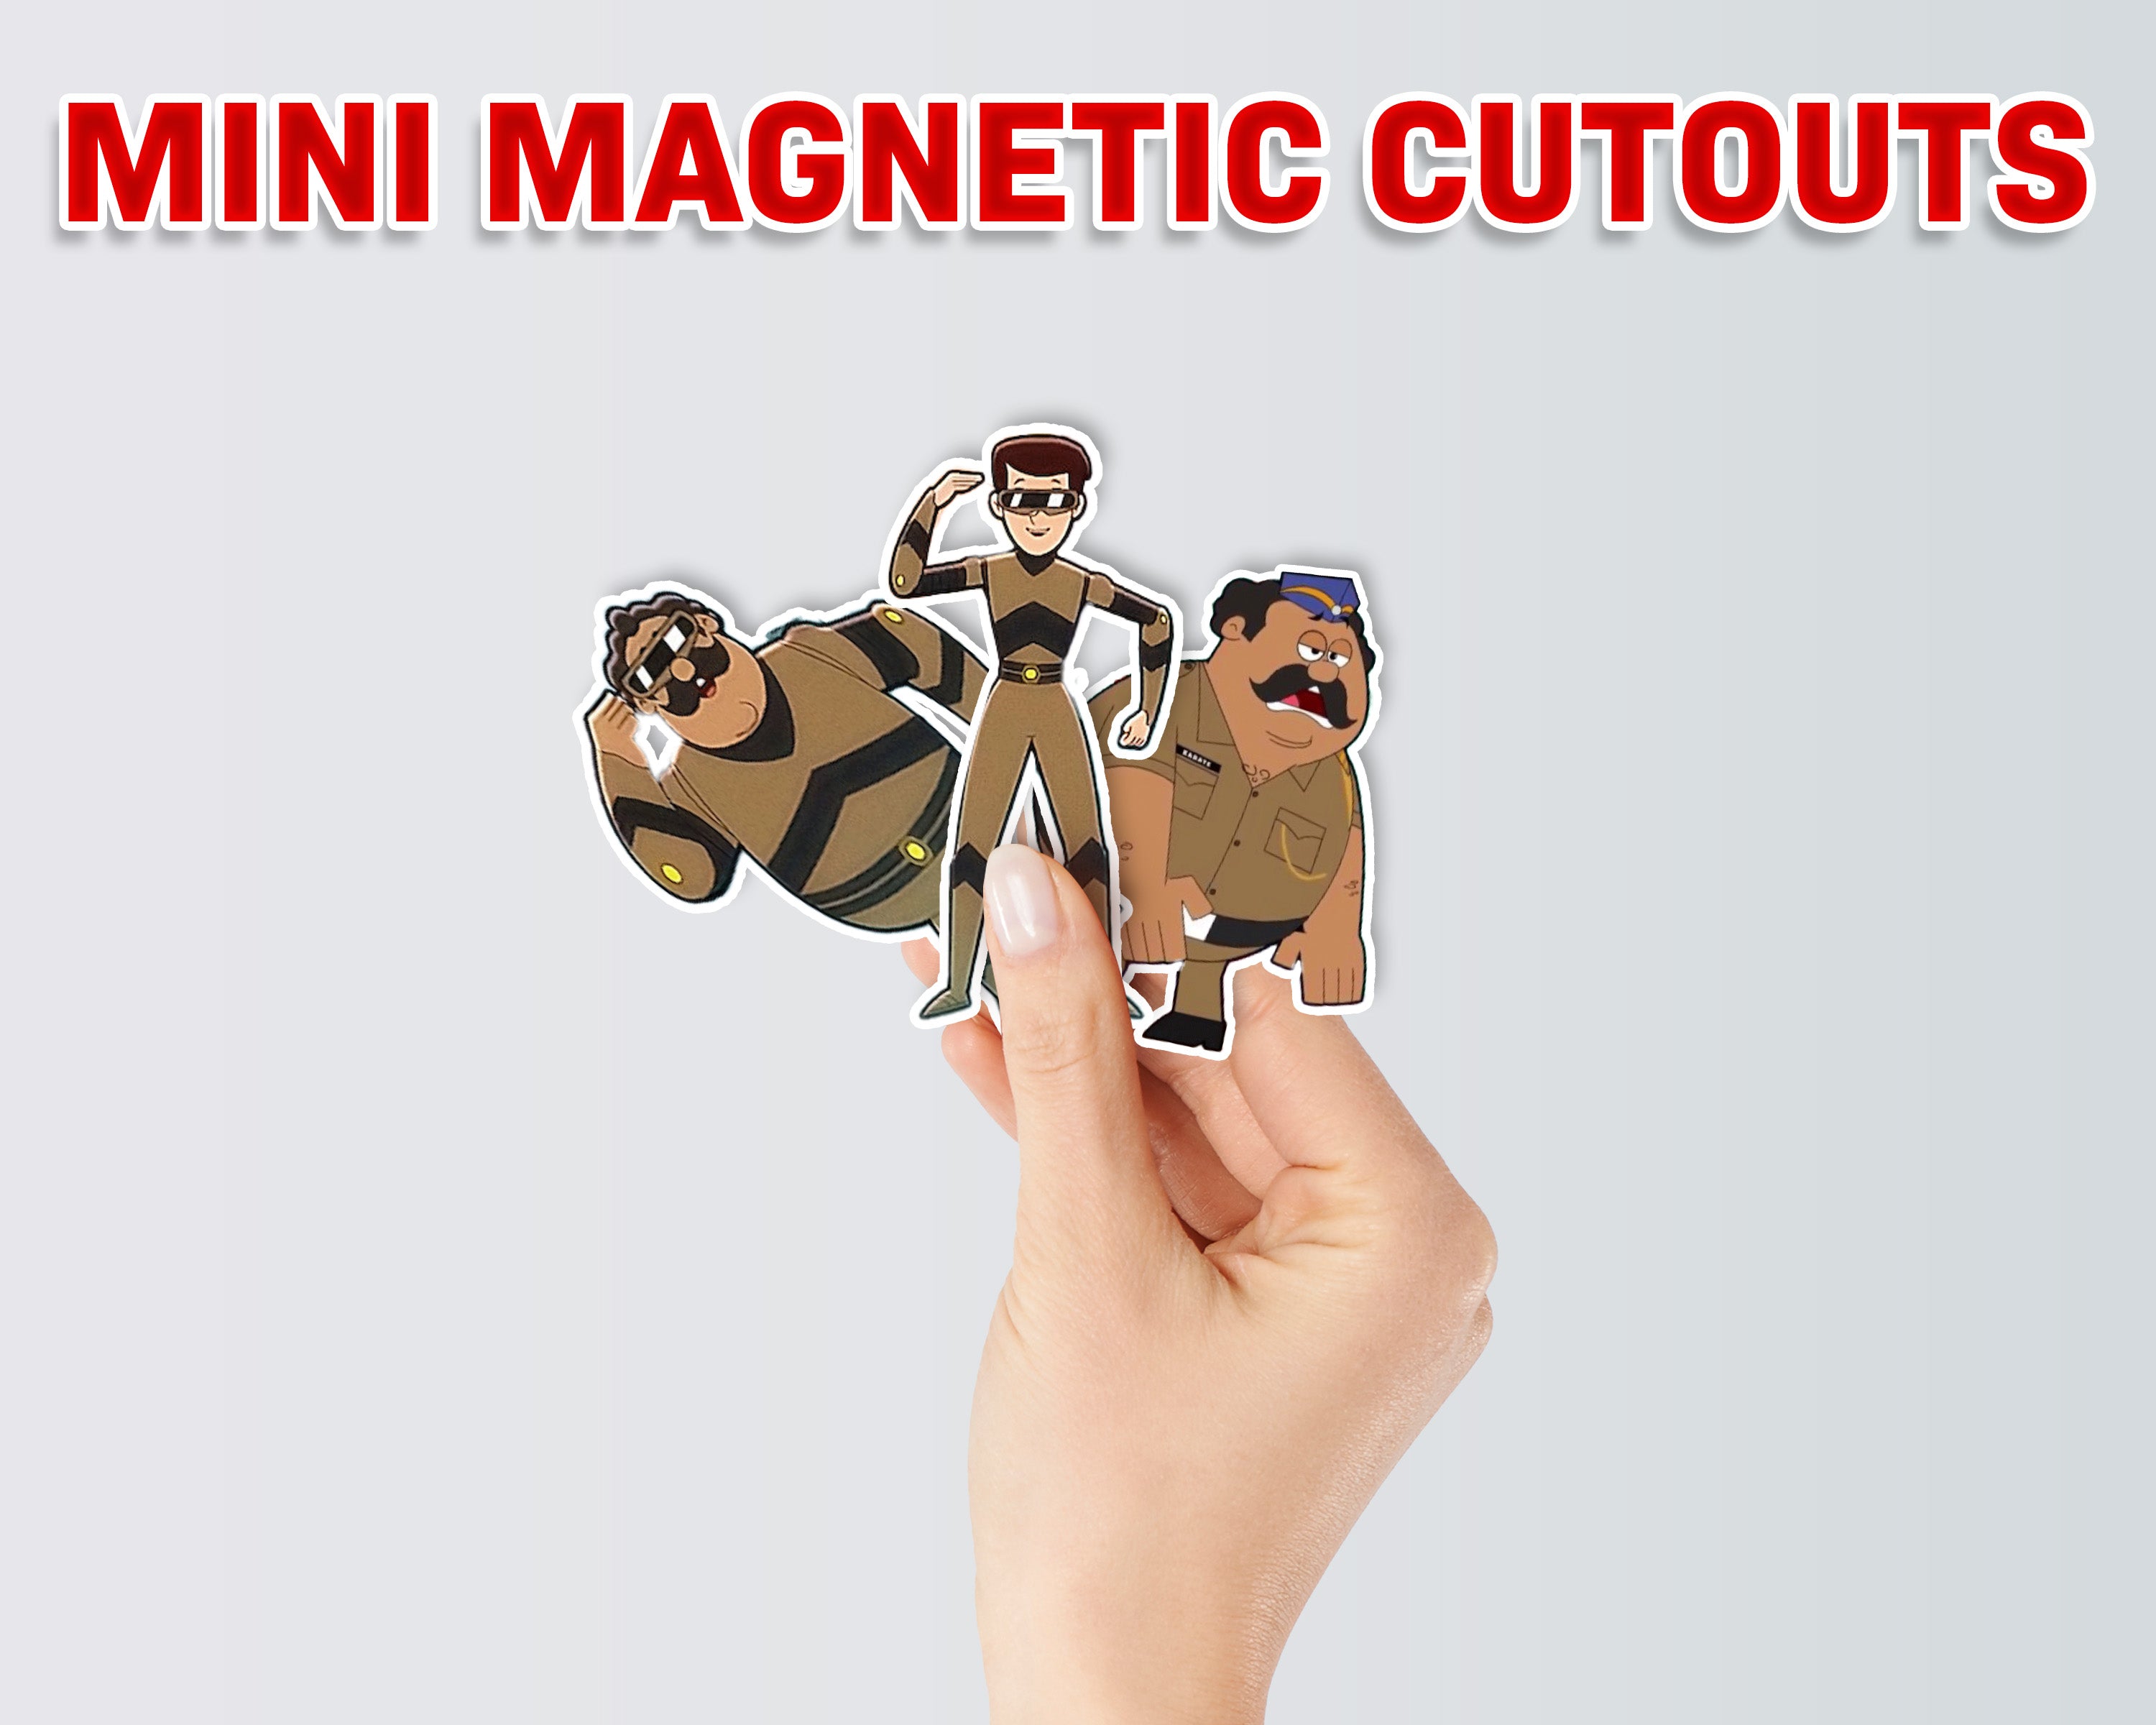 PSI Little singham Theme Mini Magnetic Return Gift Pack